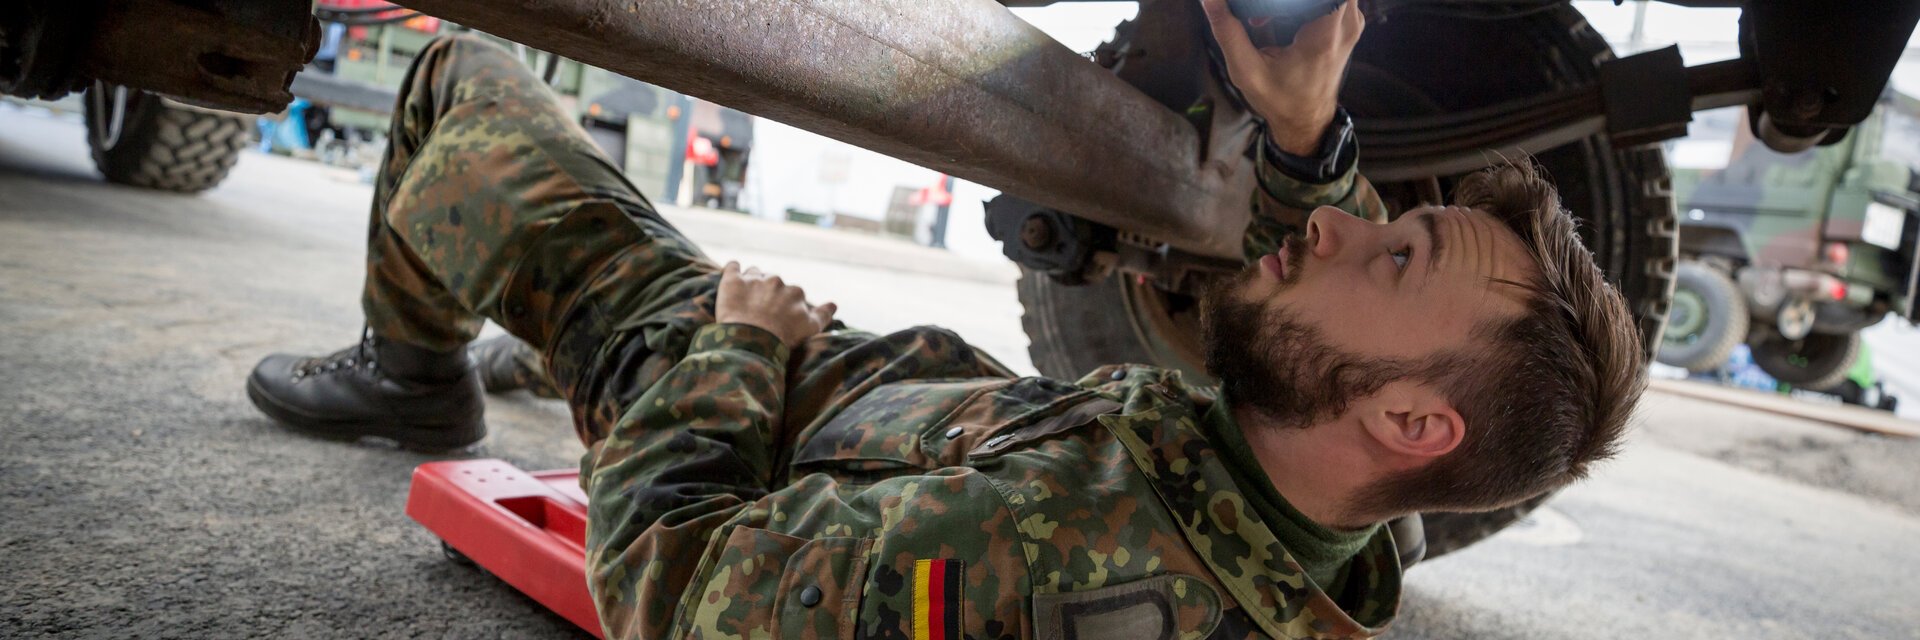 Ein Soldat liegt unter einem Fahrzeug und repariert eine Achse.